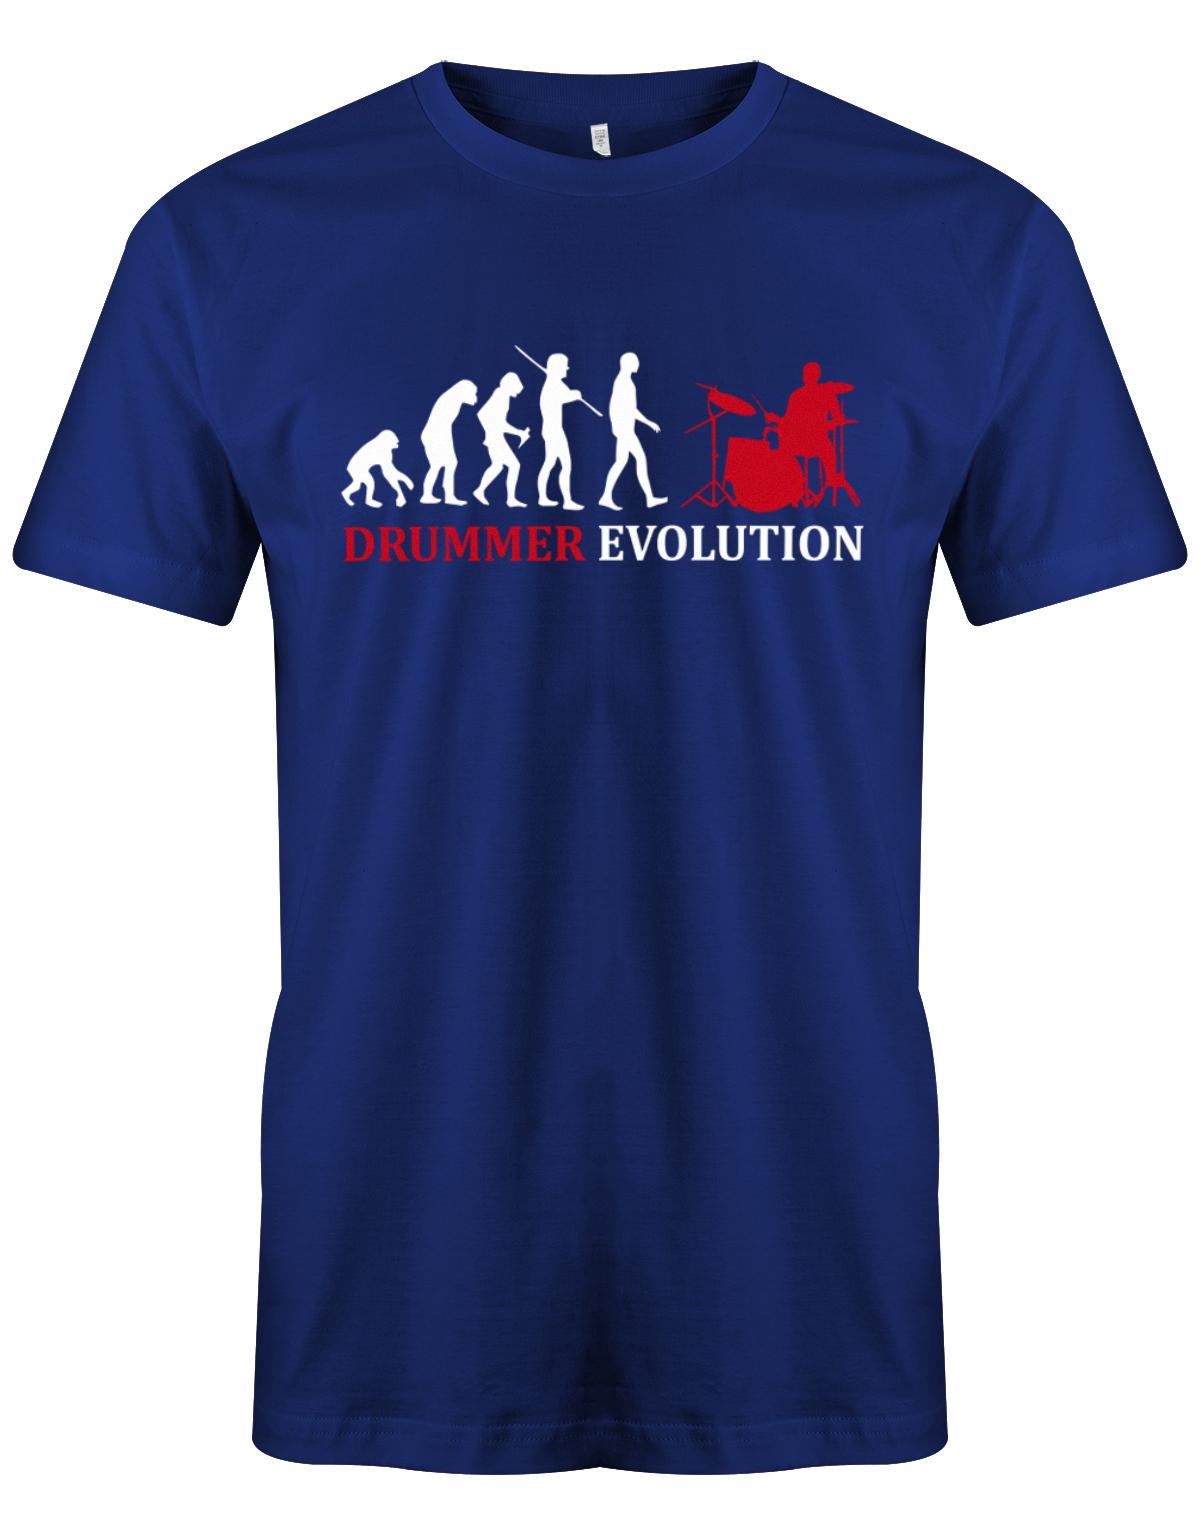 Drummer-Evolution-Herren-Shirt-Royalblau